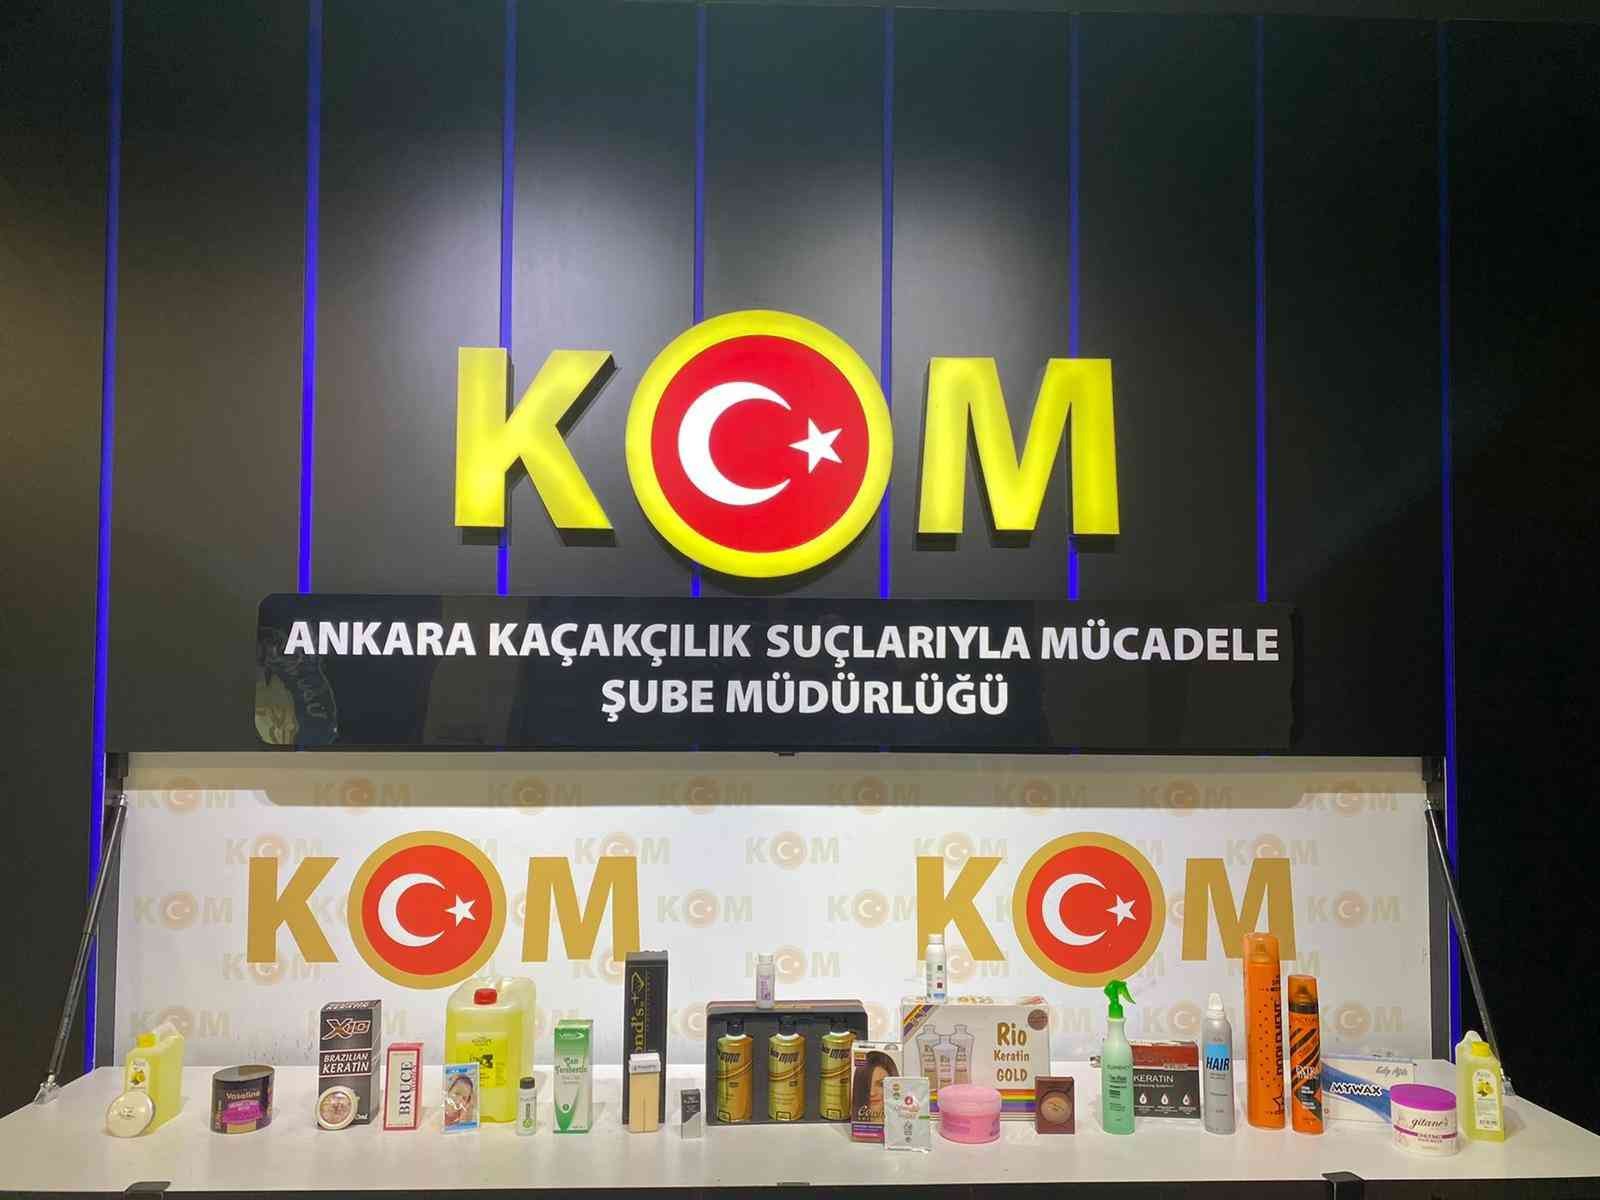 Ankara’da 137 bin 689 adet kozmetik ürün ele geçirildi #ankara